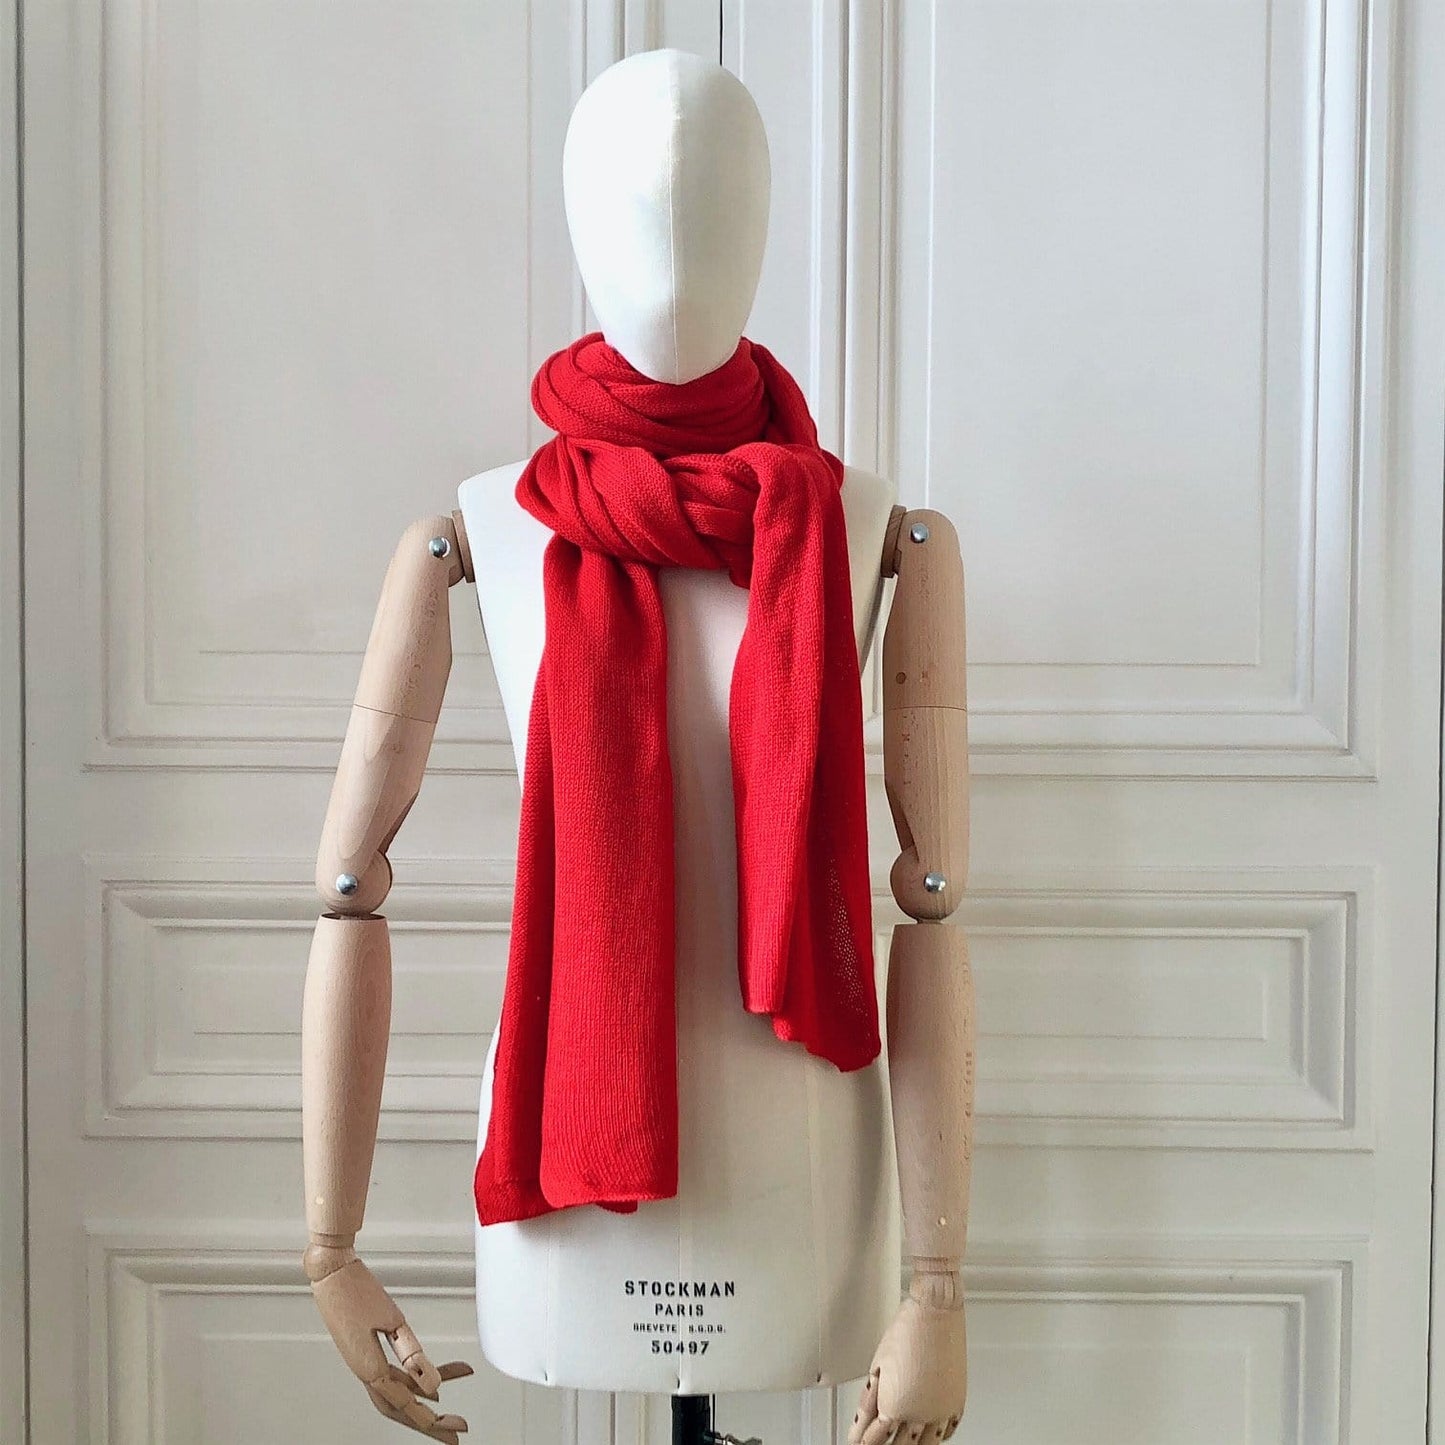 Echarpe rouge tricotée en France 200x60 cm 100% cachemire maille mousseuse